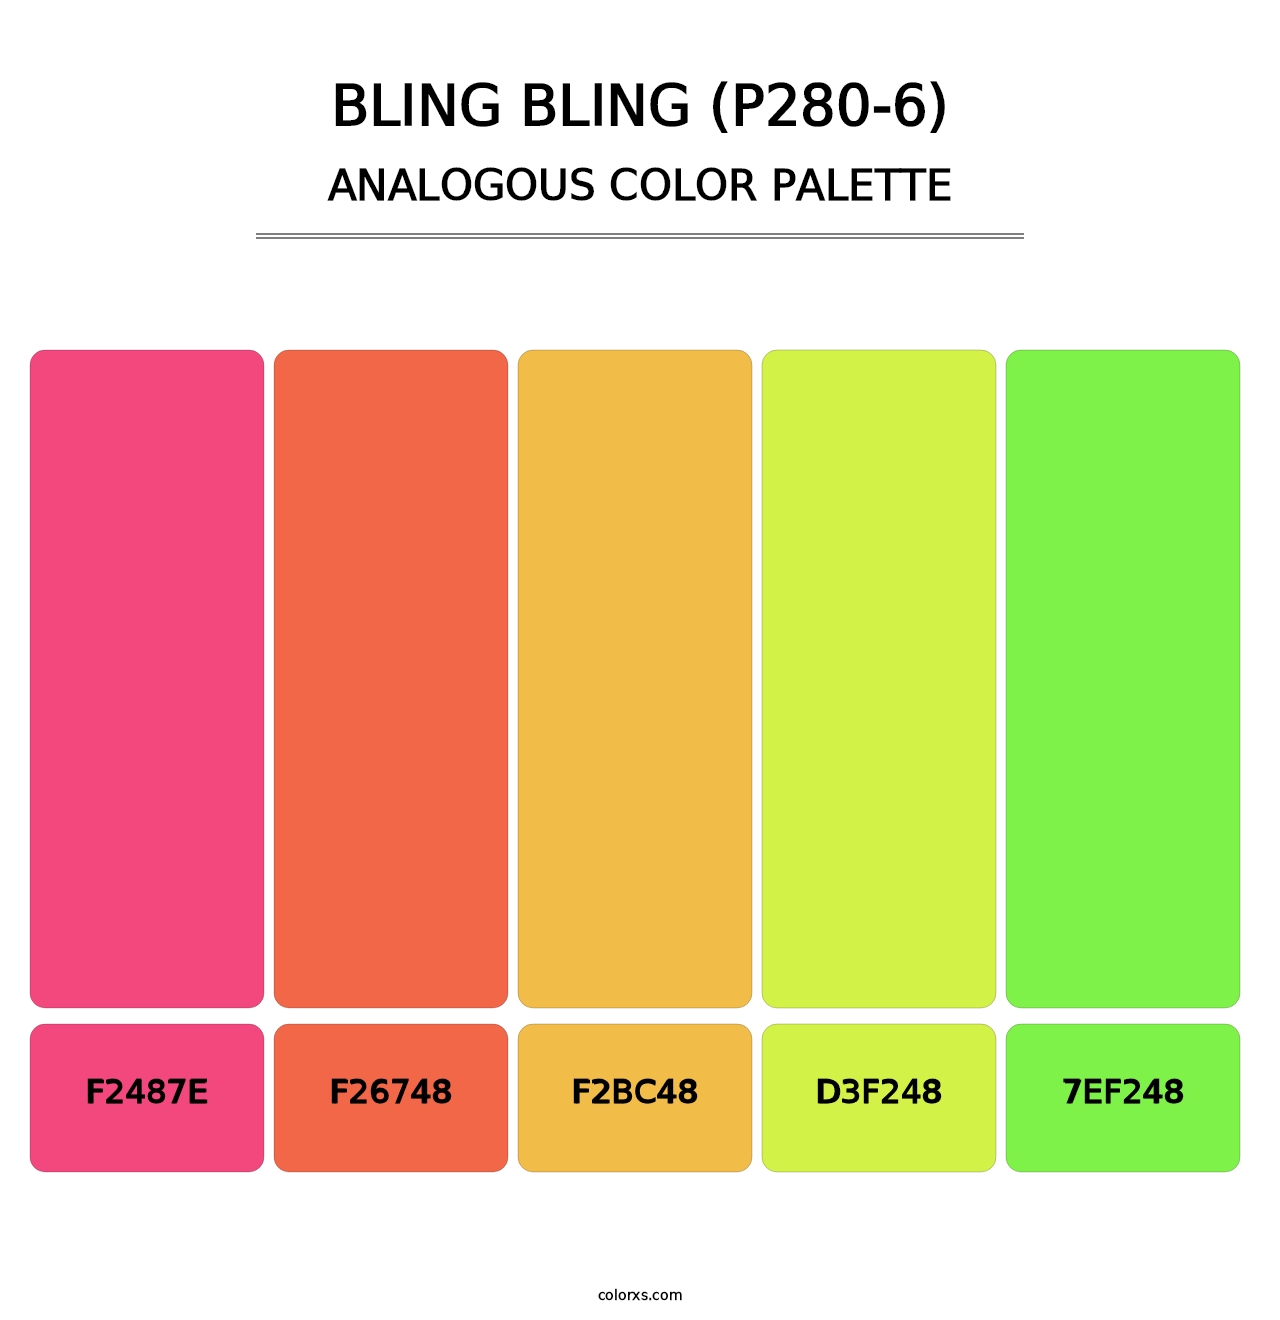 Bling Bling (P280-6) - Analogous Color Palette